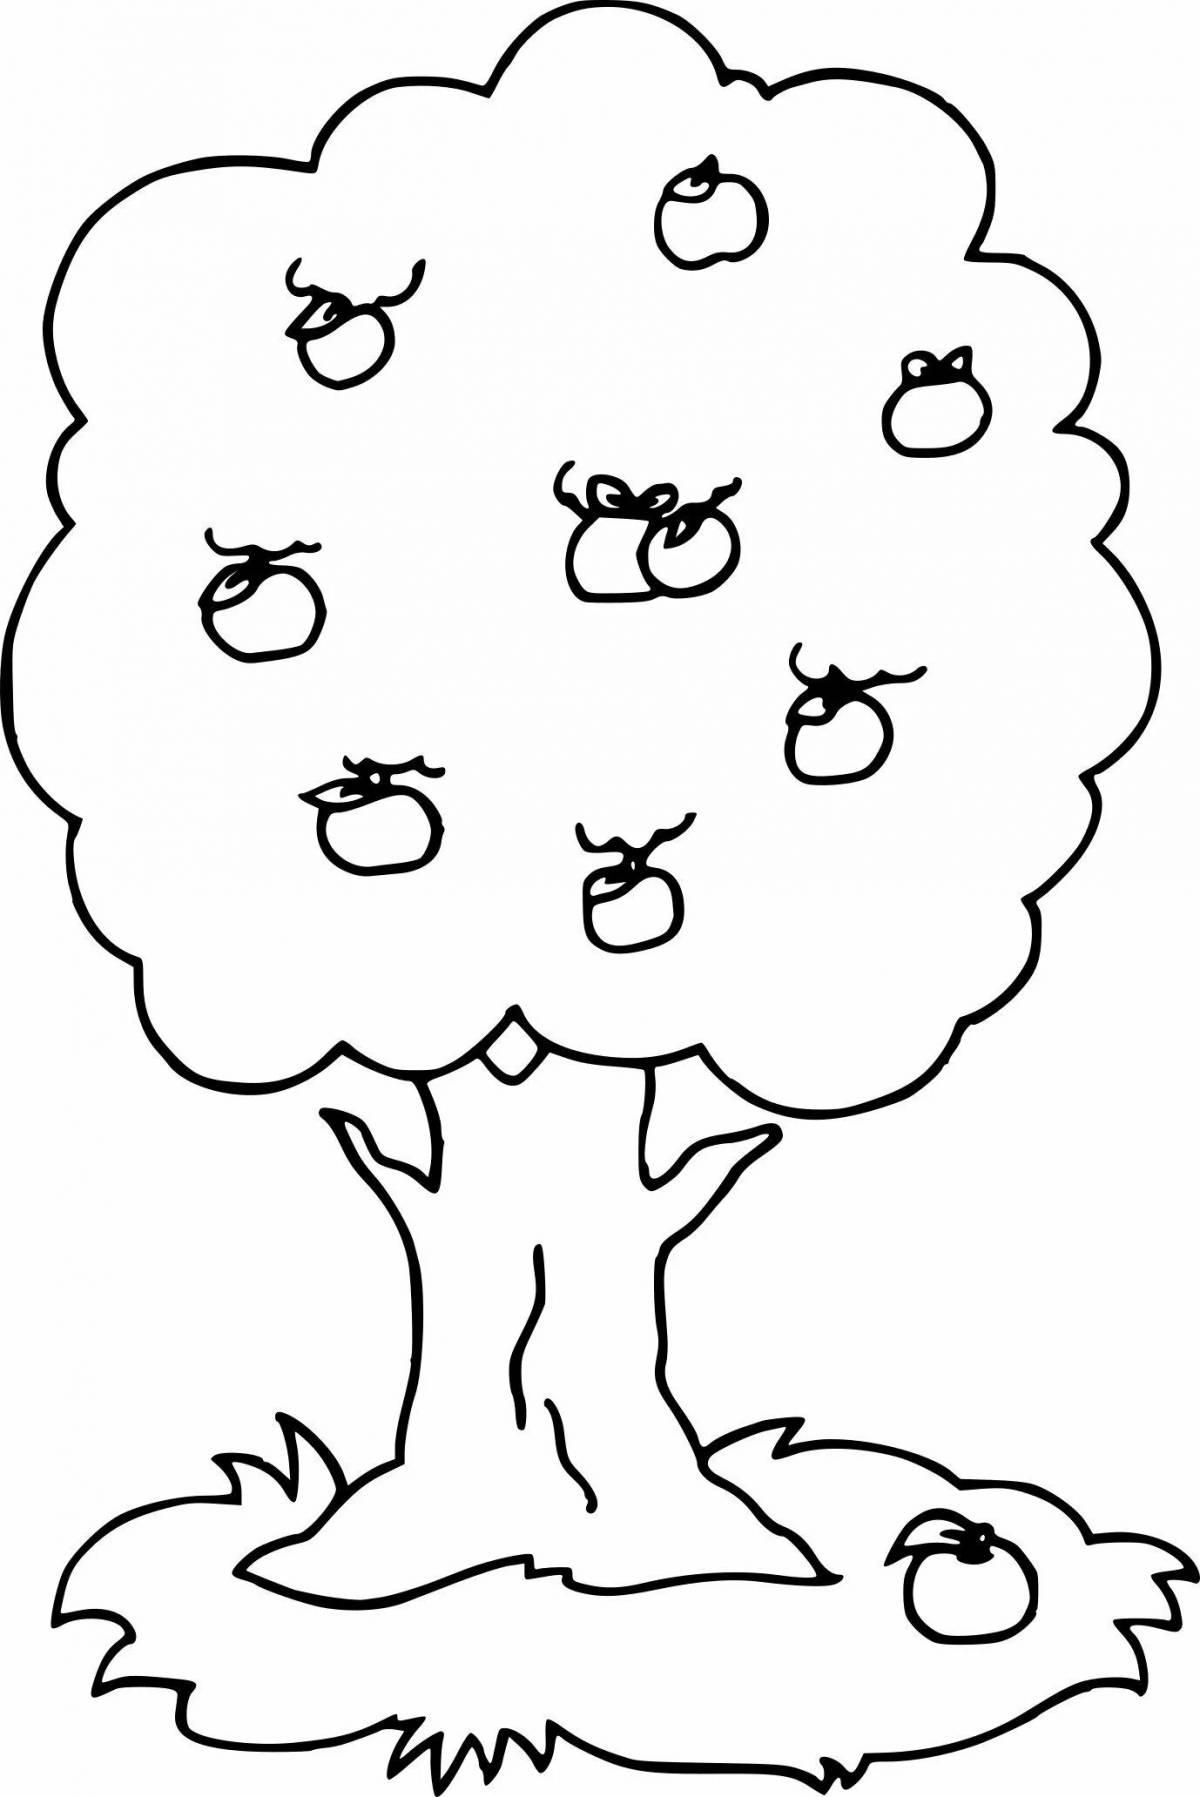 Потрясающая страница раскраски деревьев для детей 5-6 лет